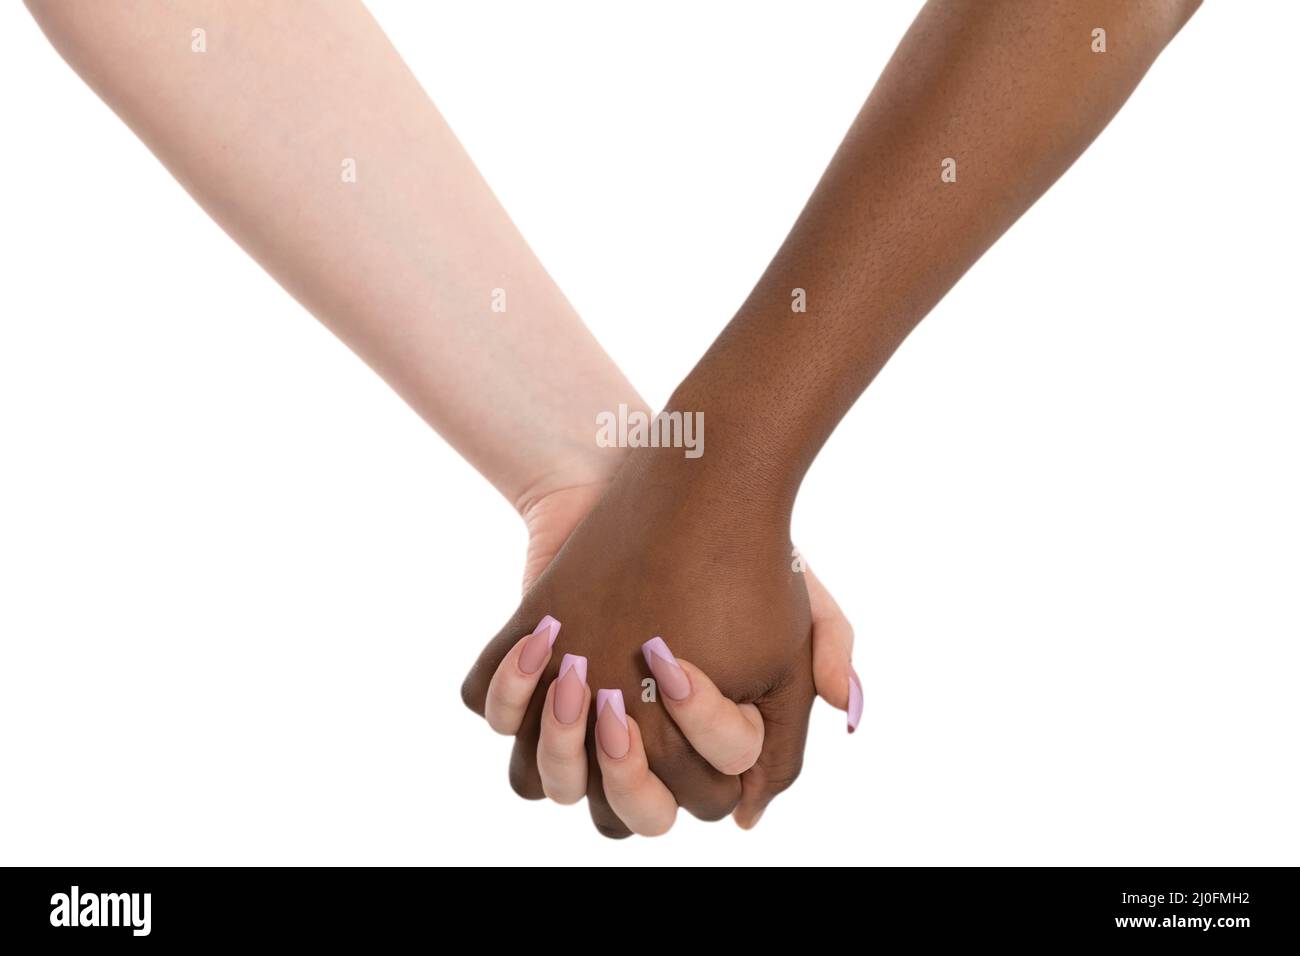 Zwei Hände in herzlicher Umarmung. Händedruck. Zwei Frauen halten sich die Hände. Zwei Hände verschiedener Rassen in einer liebevollen Umarmung. Afrikanisch und Stockfoto